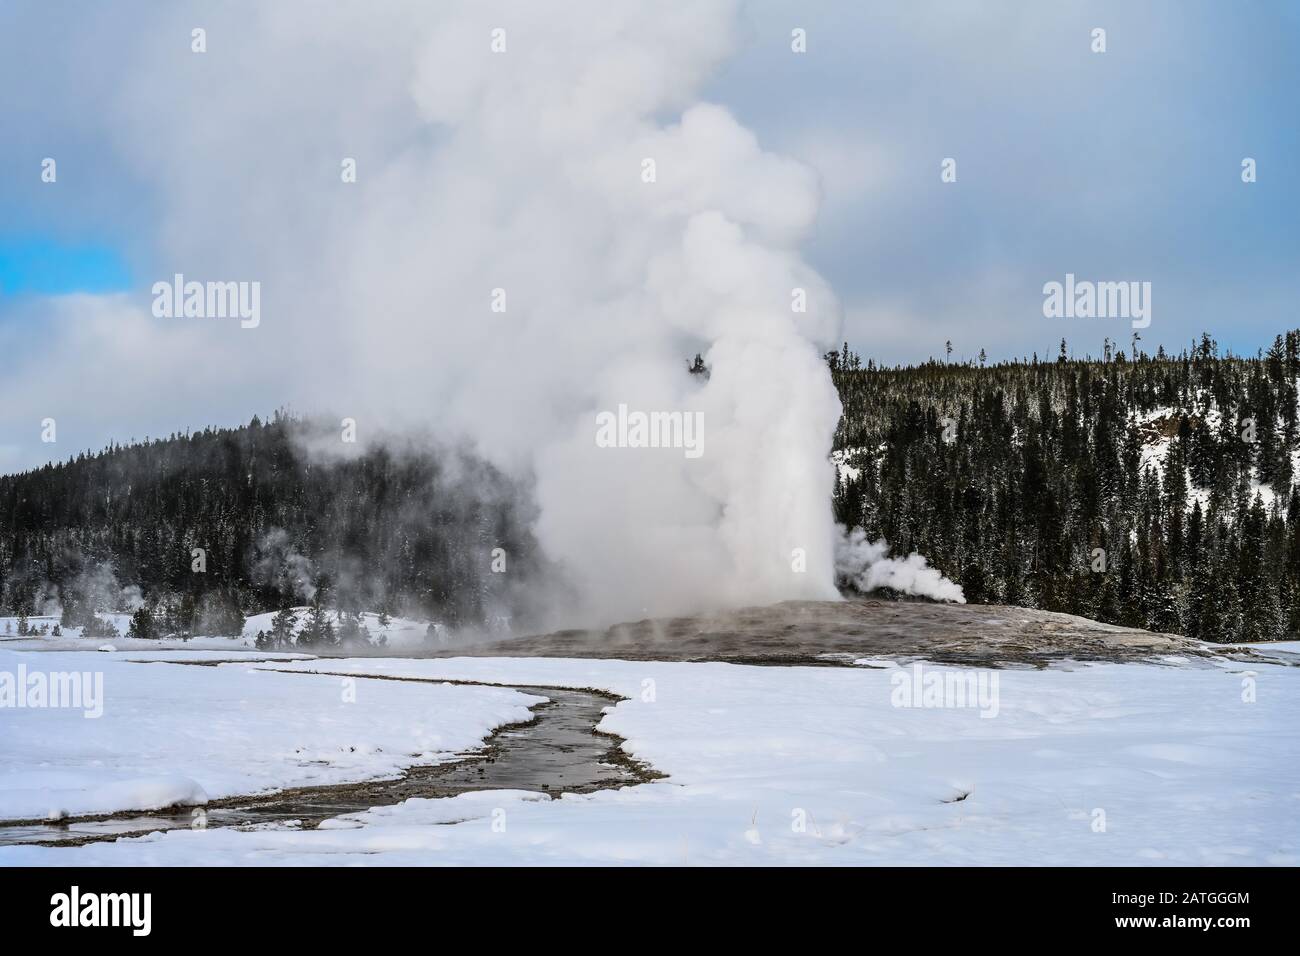 Le vieux geyser Fidèle éclate dans une journée d'hiver, à la vapeur d'ébouchage et à l'eau chaude dans le ciel. Yellowstone National Park, Wyoming, États-Unis. Banque D'Images